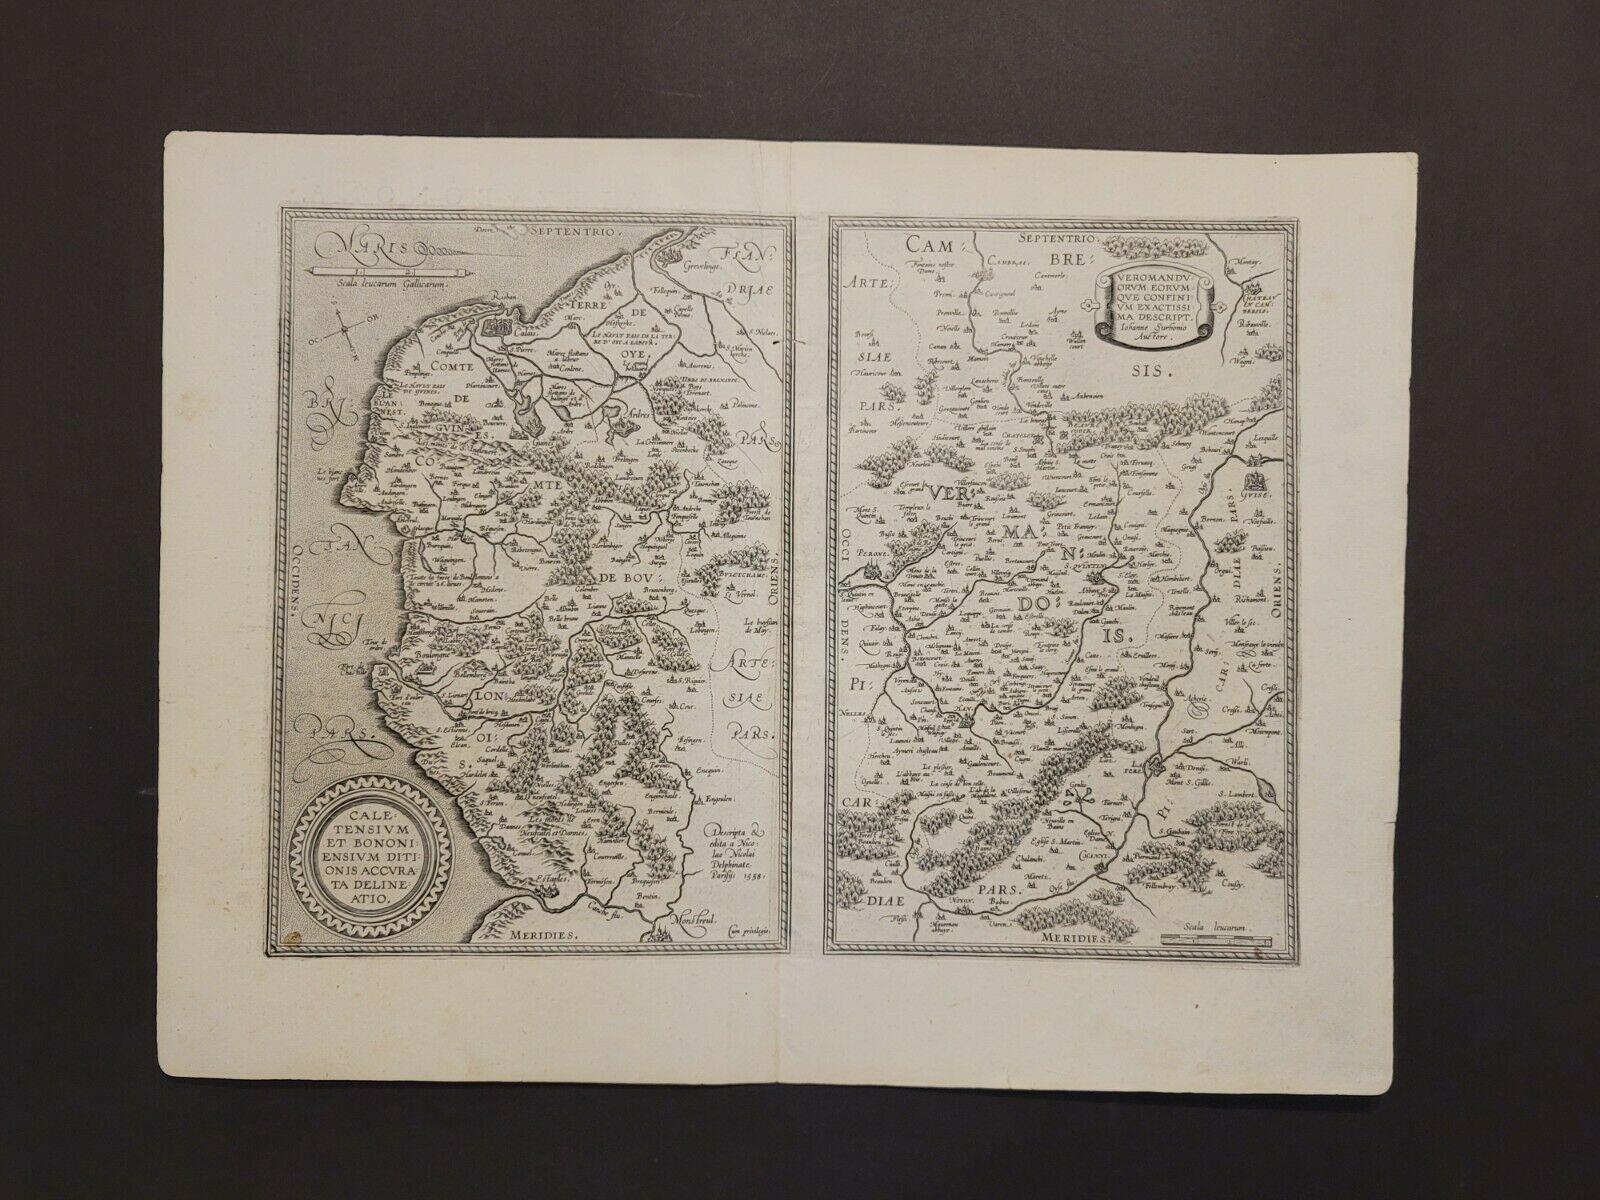 1590 Carte d'Ortelius de 
Calais et Vermandois, France et environs 
Ric.a014

Deux rares cartes régionales d'Abraham Ortelius sur une seule feuille folio. La carte de gauche, intitulée Caletensium, représente le littoral français et belge